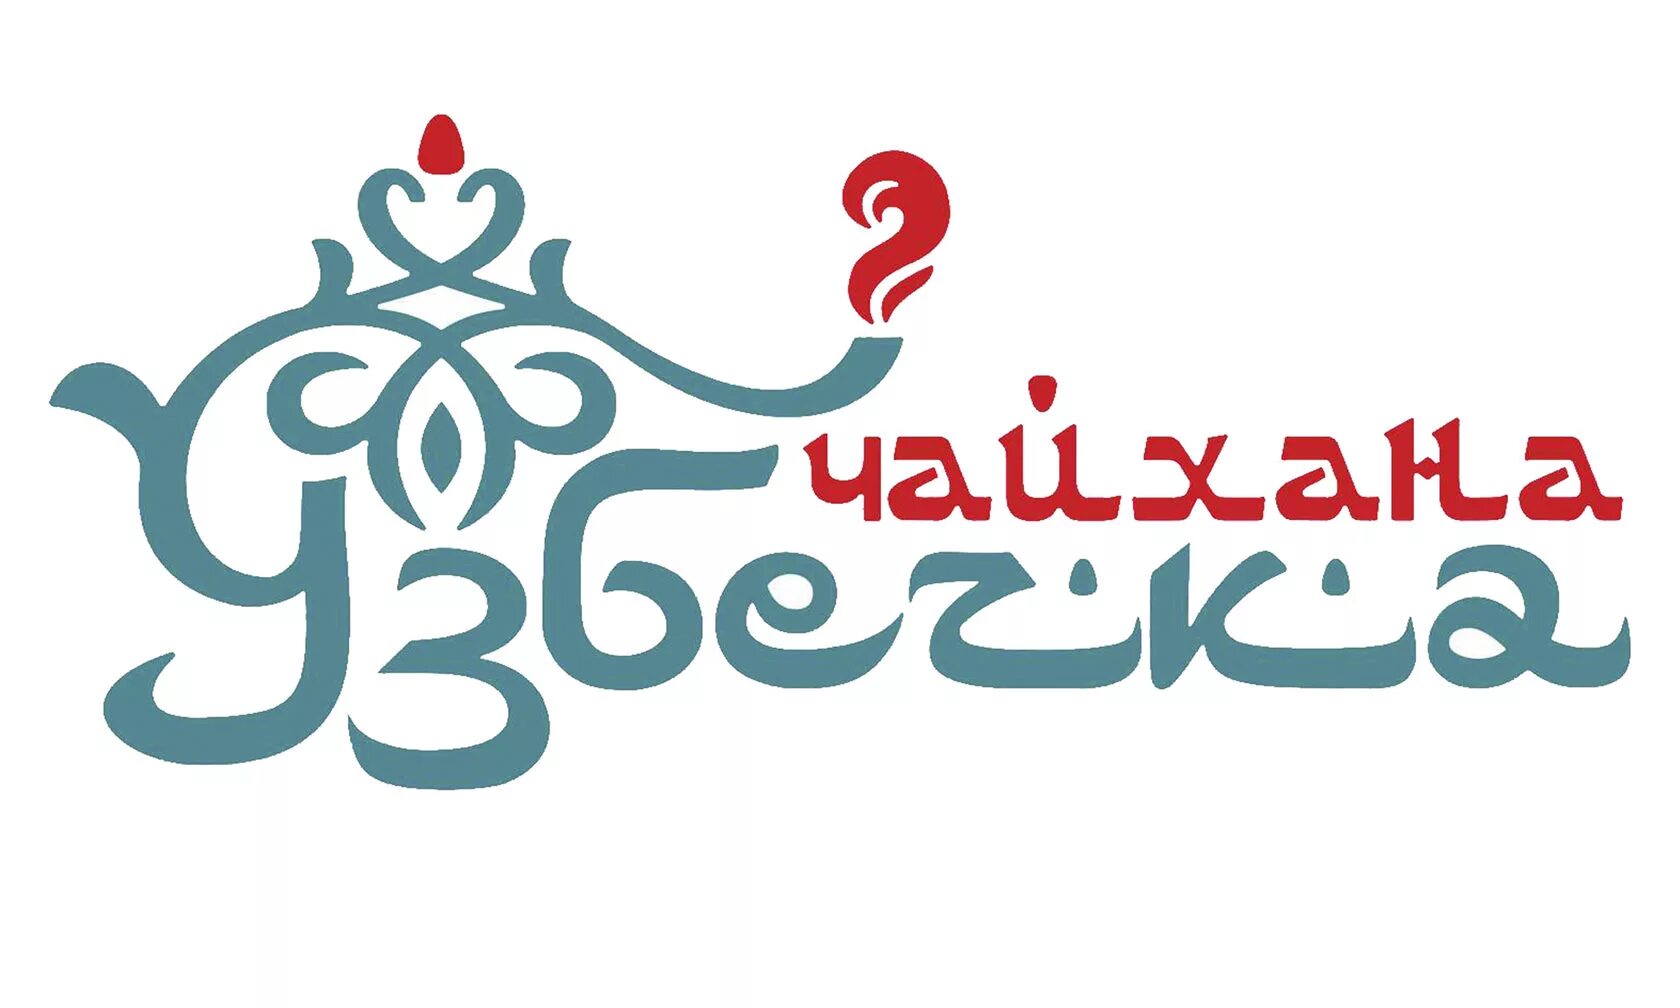 Чайхана логотип. Логотип узбекской кухни. Логотип восточного ресторана. Чайхана вывеска.